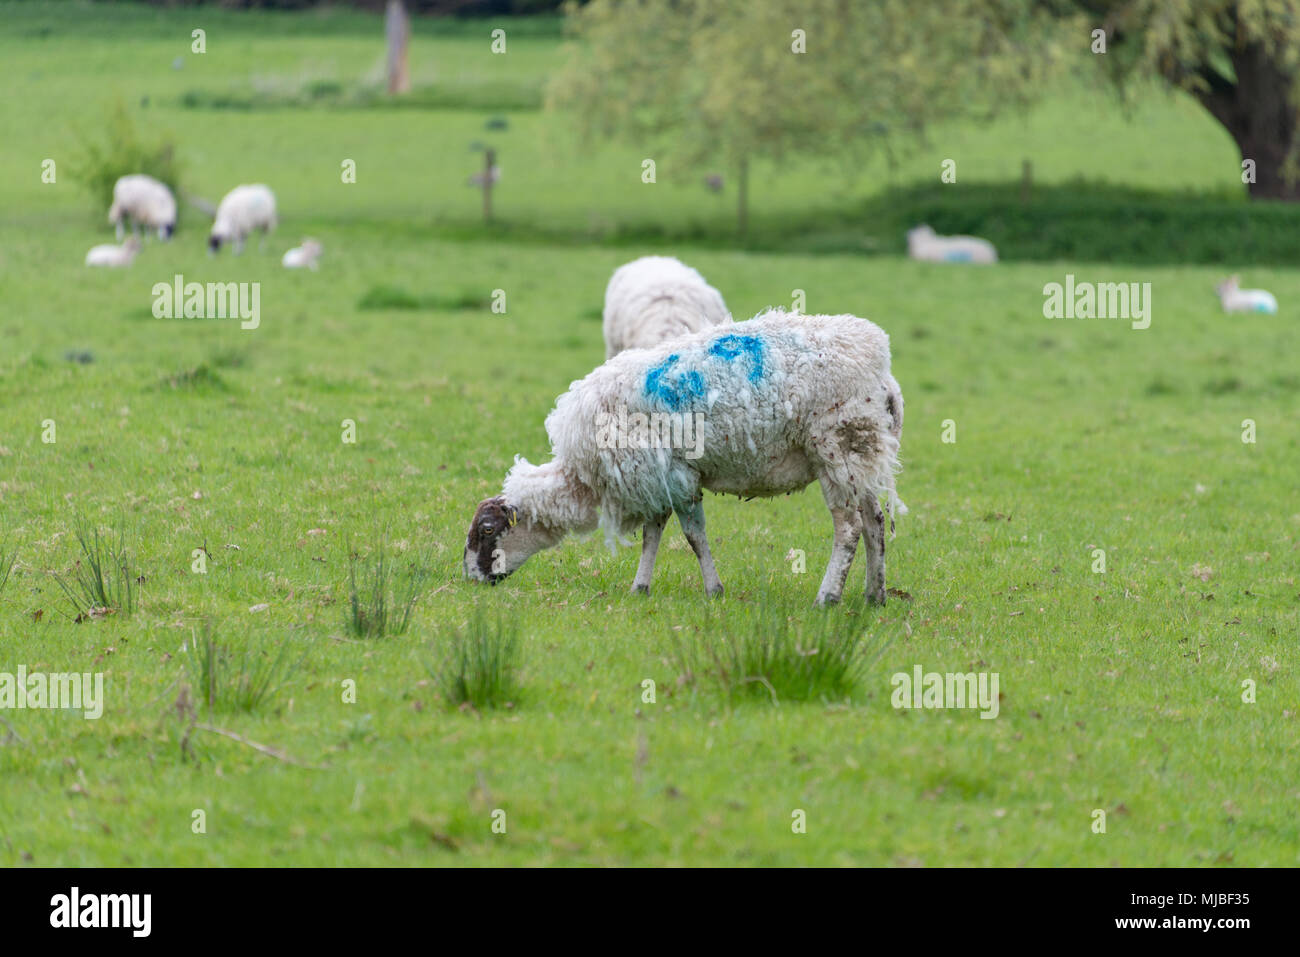 Ewe with 69 branded on fleece Stock Photo